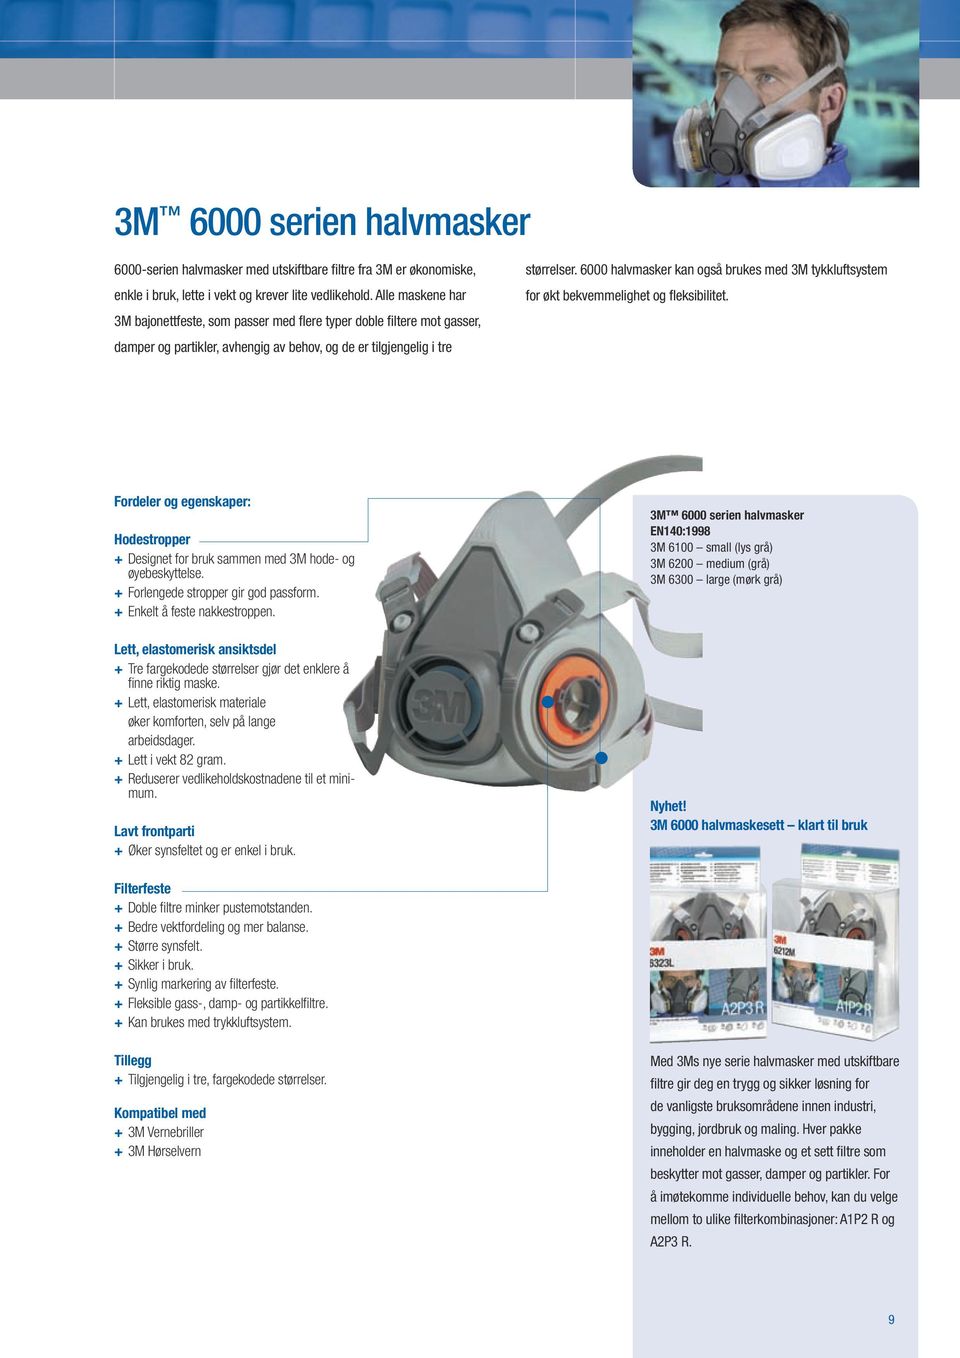 6000 halvmasker kan også brukes med 3M tykkluftsystem for økt bekvemmelighet og fleksibilitet. Fordeler og egenskaper: Hodestropper + Designet for bruk sammen med 3M hode- og øyebeskyttelse.